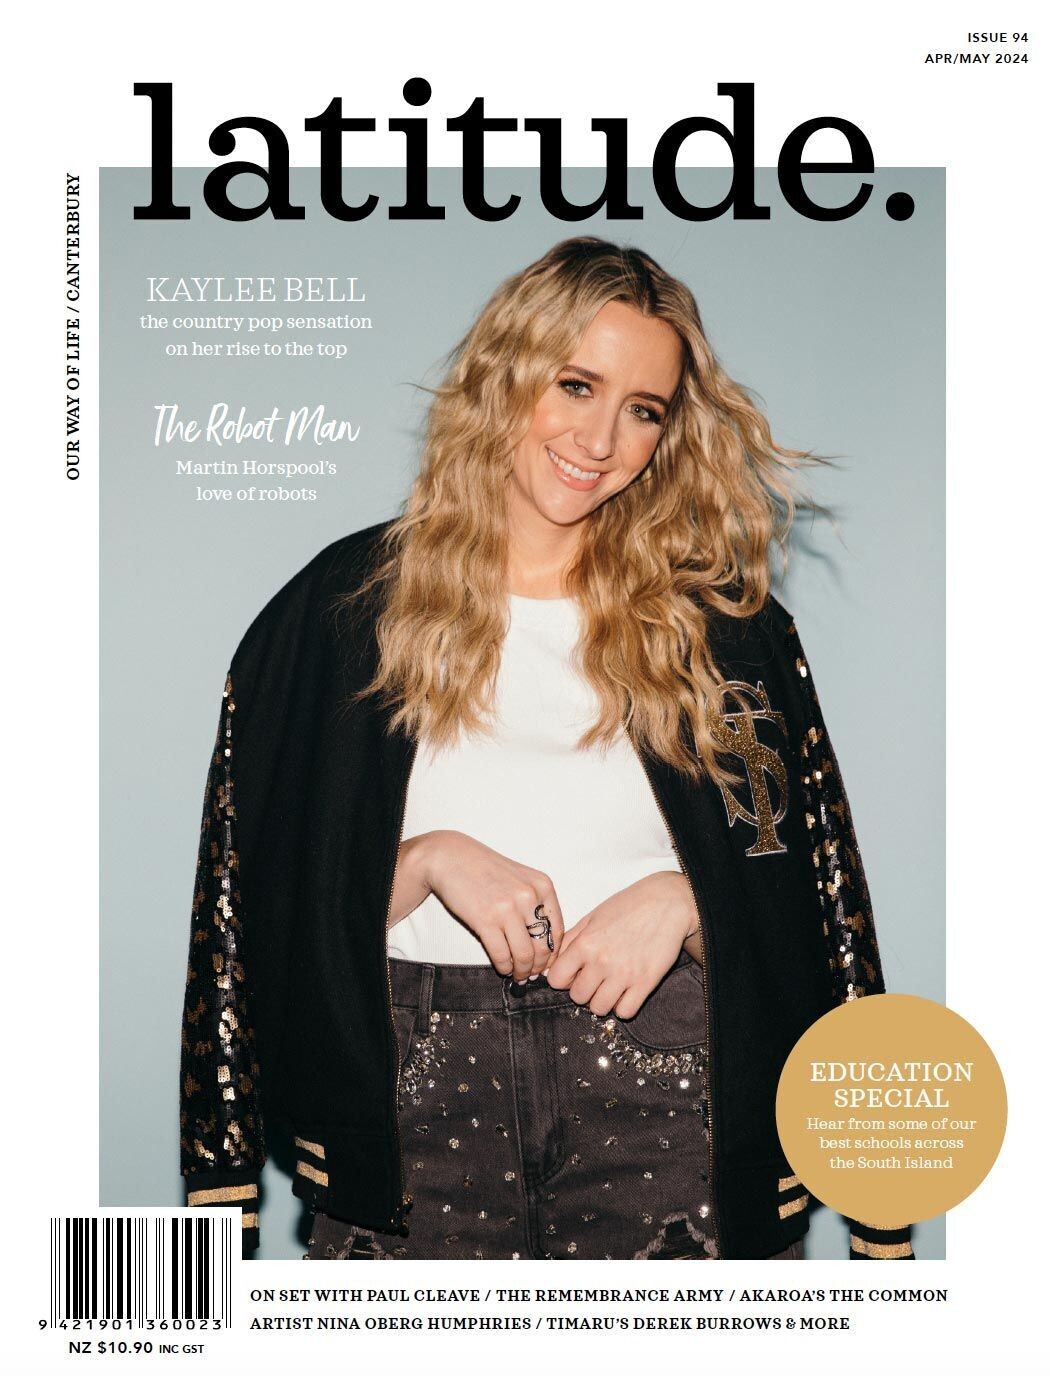 latitude Magazine Current Issue